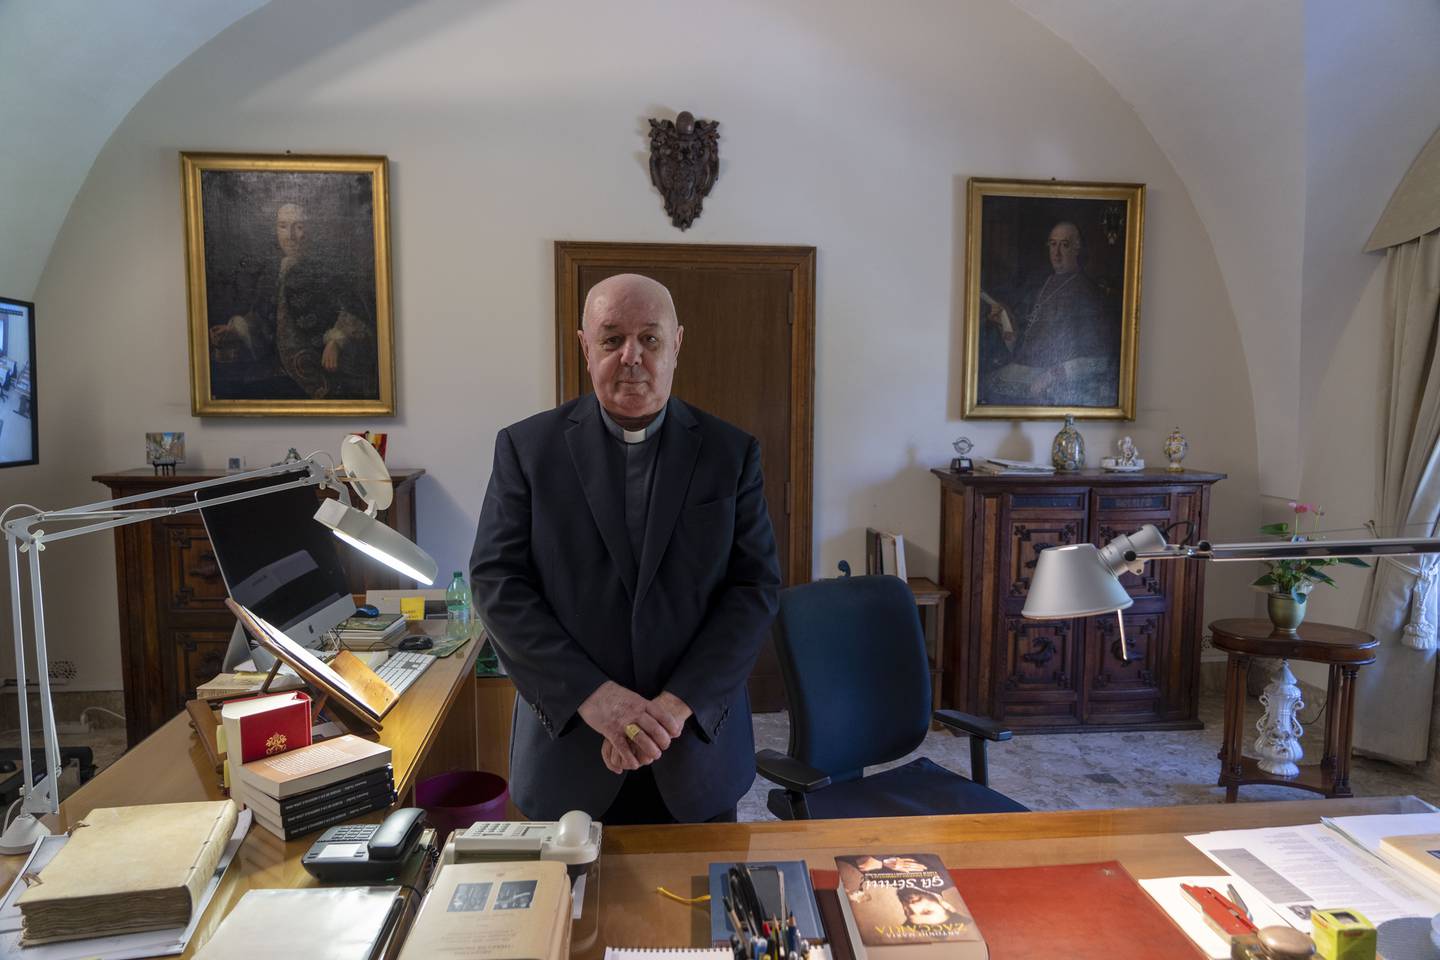 Erkebiskop Sergio Pagano har voktet Vatikanets arkiv i 45 år. Nå er det slutt.